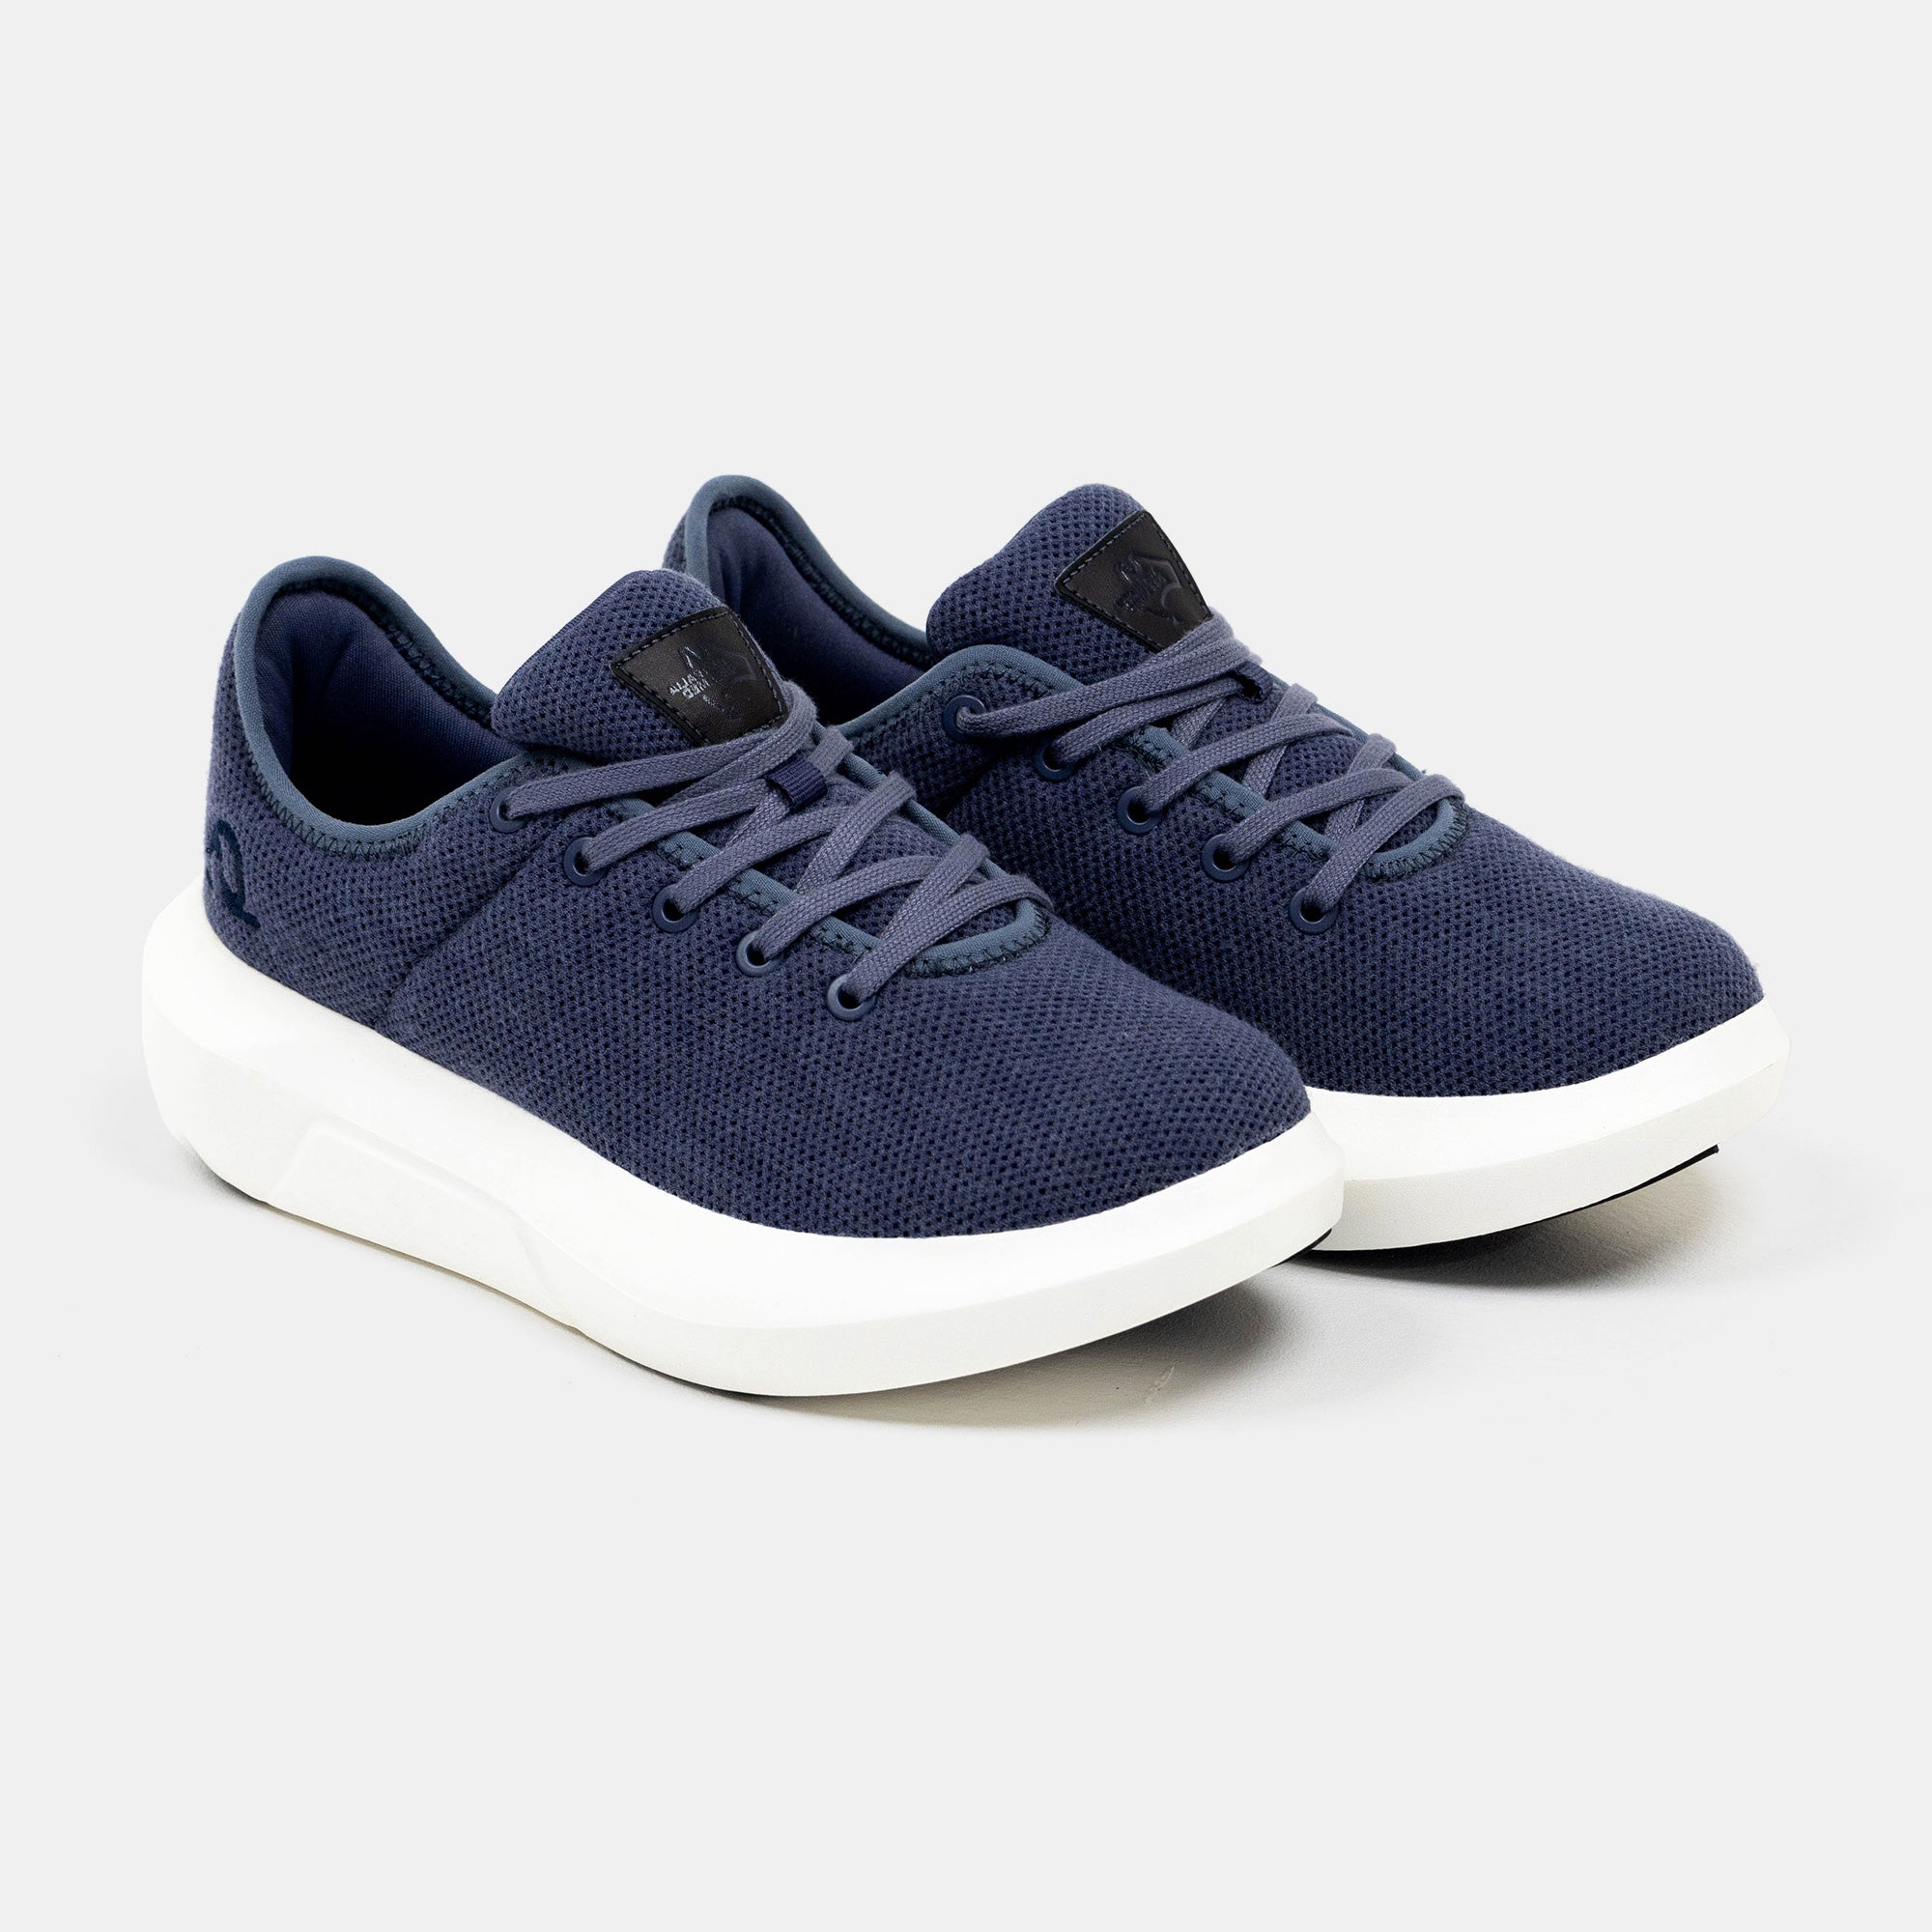 Comfort Plus Sneaker Walking Shoe - Navy